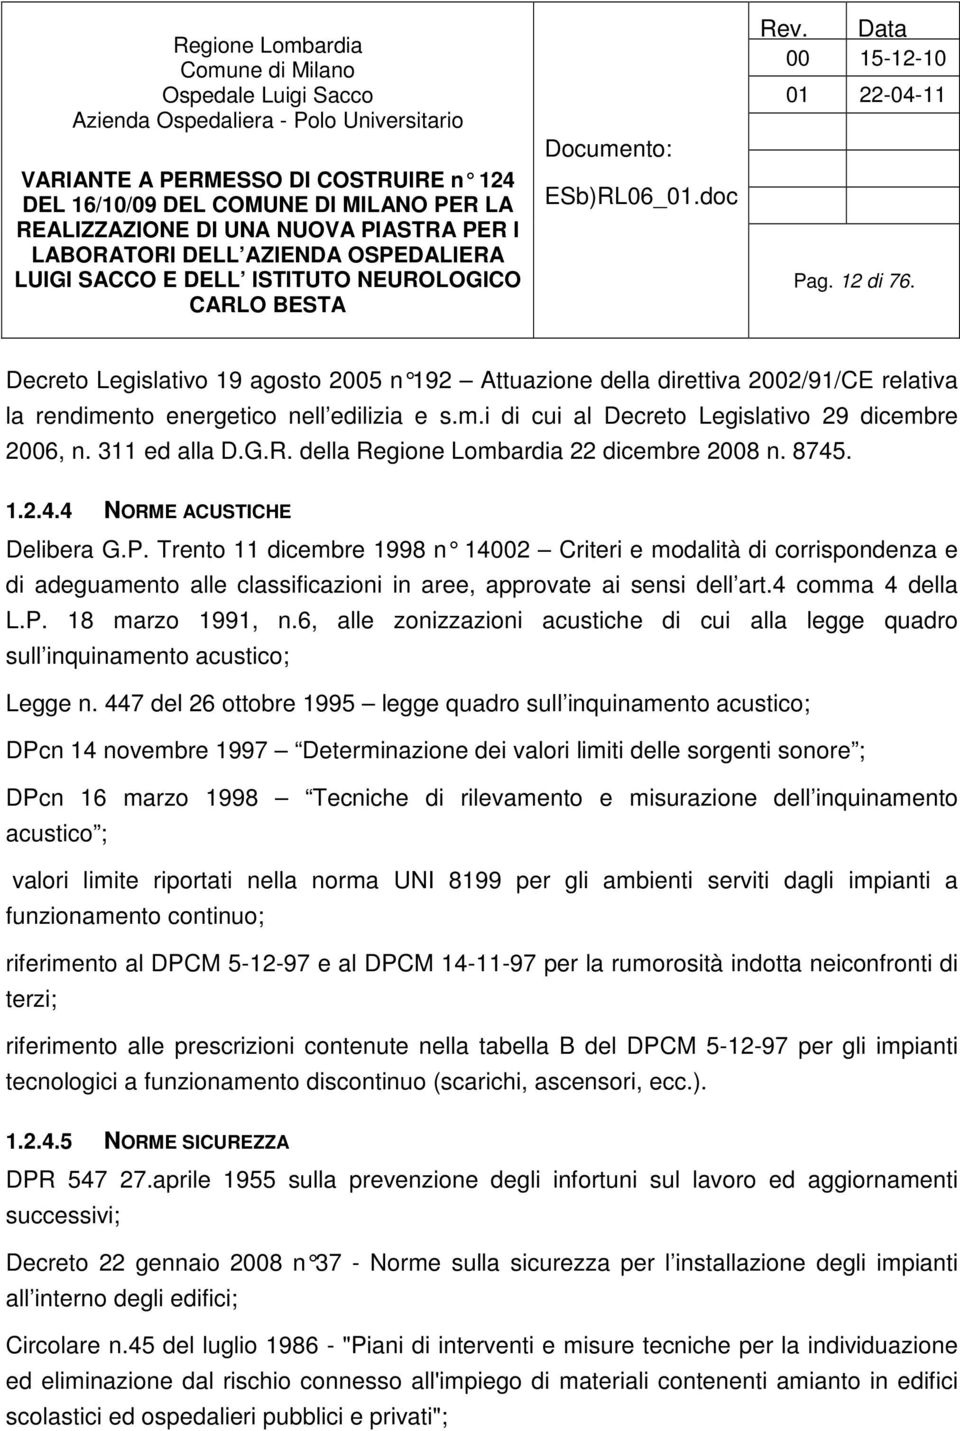 Trento 11 dicembre 1998 n 14002 Cr iteri e modalità di corrispondenza e di adeguamento alle classificazioni in aree, approvate ai sensi dell art.4 comma 4 della L.P. 18 marzo 1991, n.